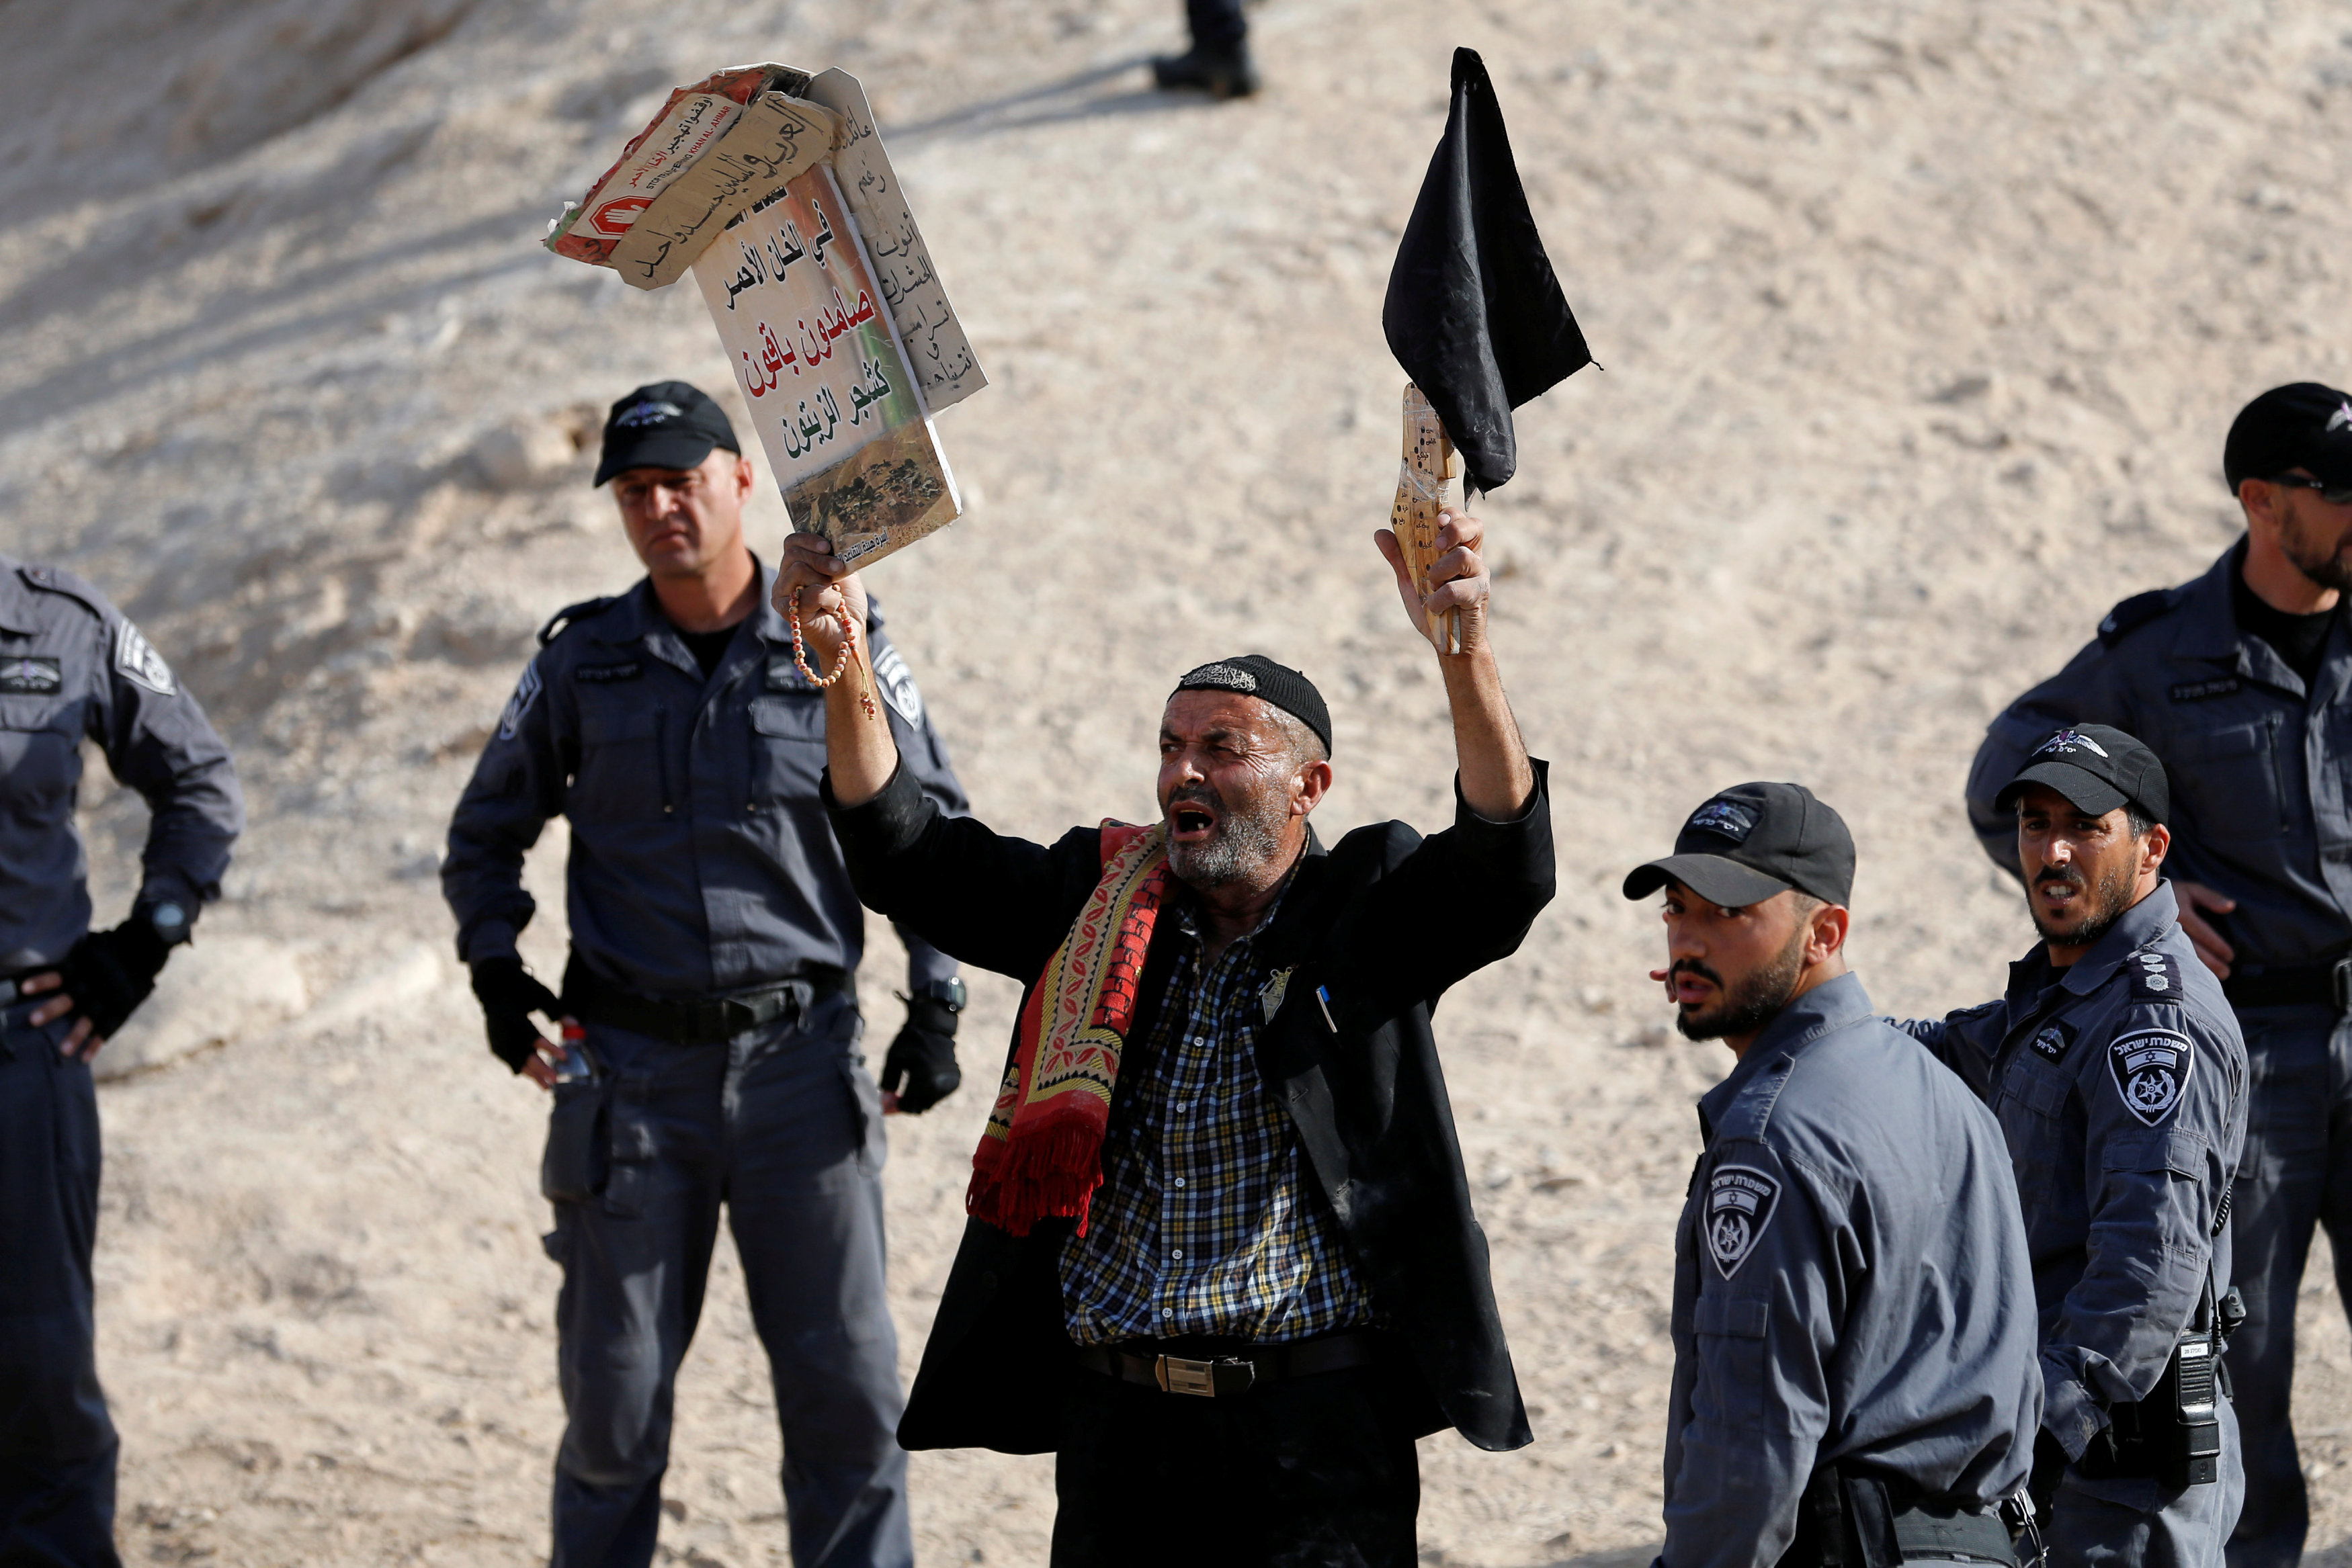 فلسطينى تحاصره قوات الاحتلال بينما يرفع لافتة تدعو للصمود